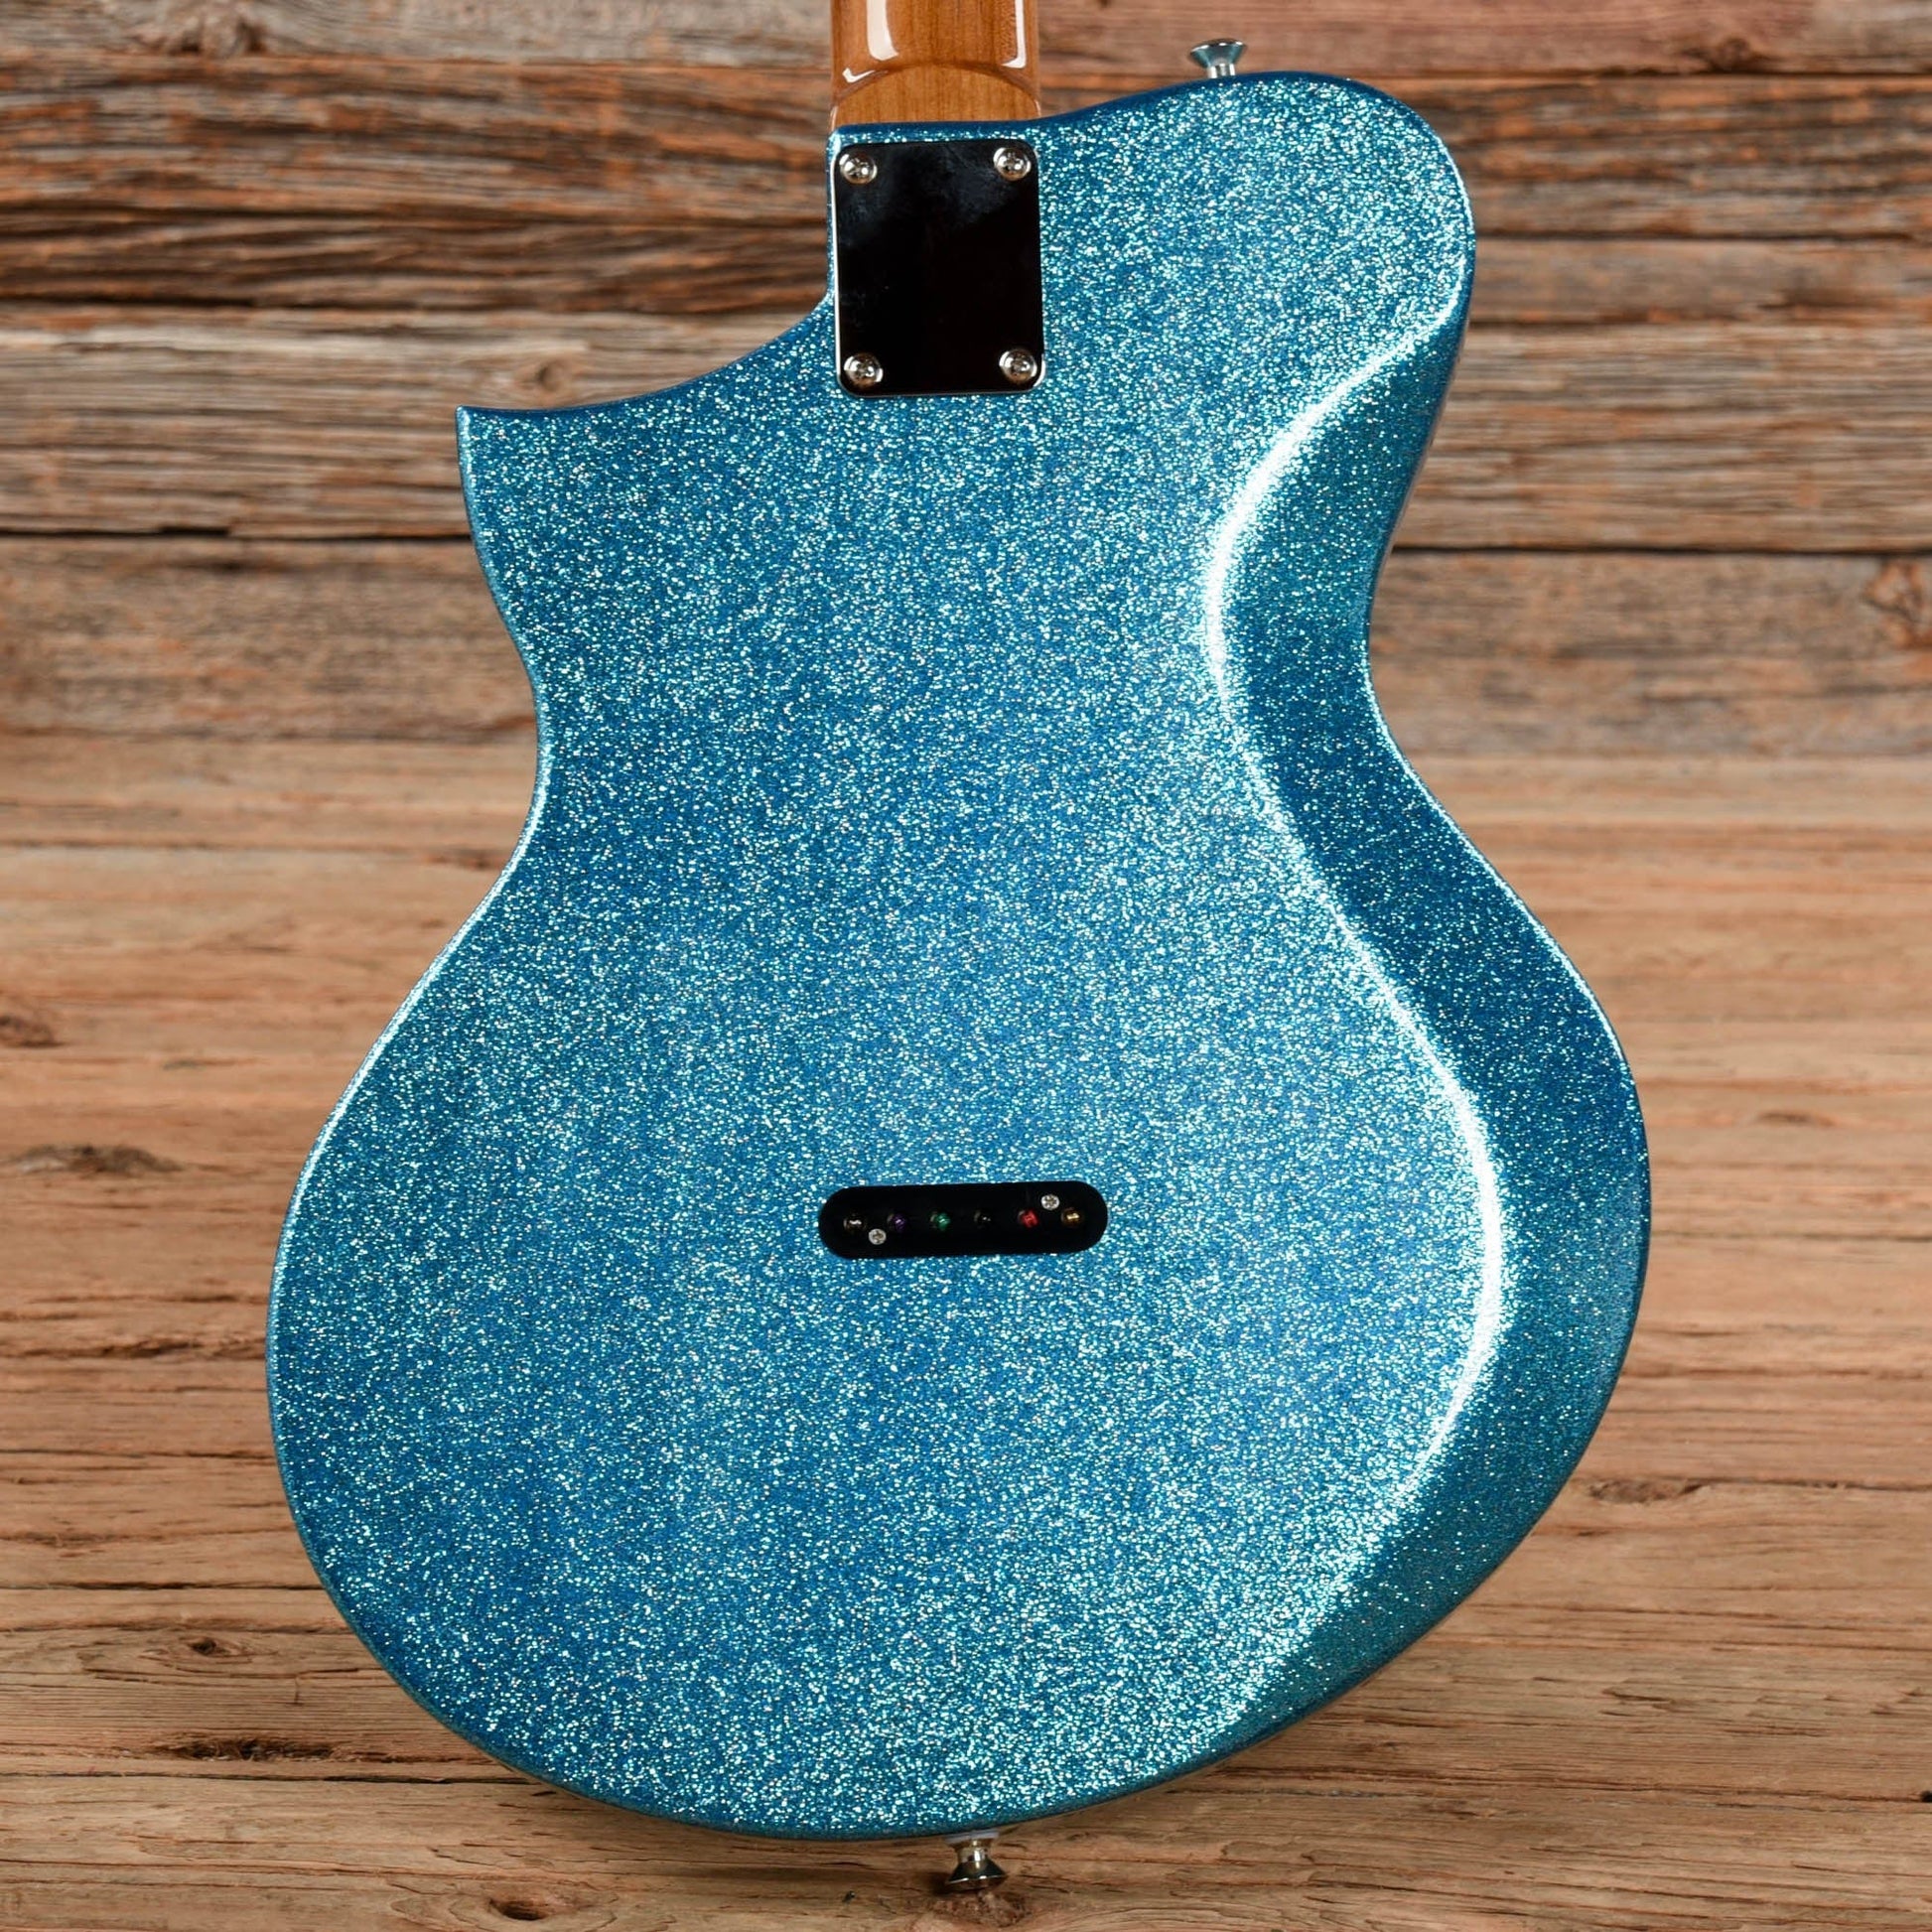 Kauer Korona Sky Blue Flake Electric Guitars / Solid Body